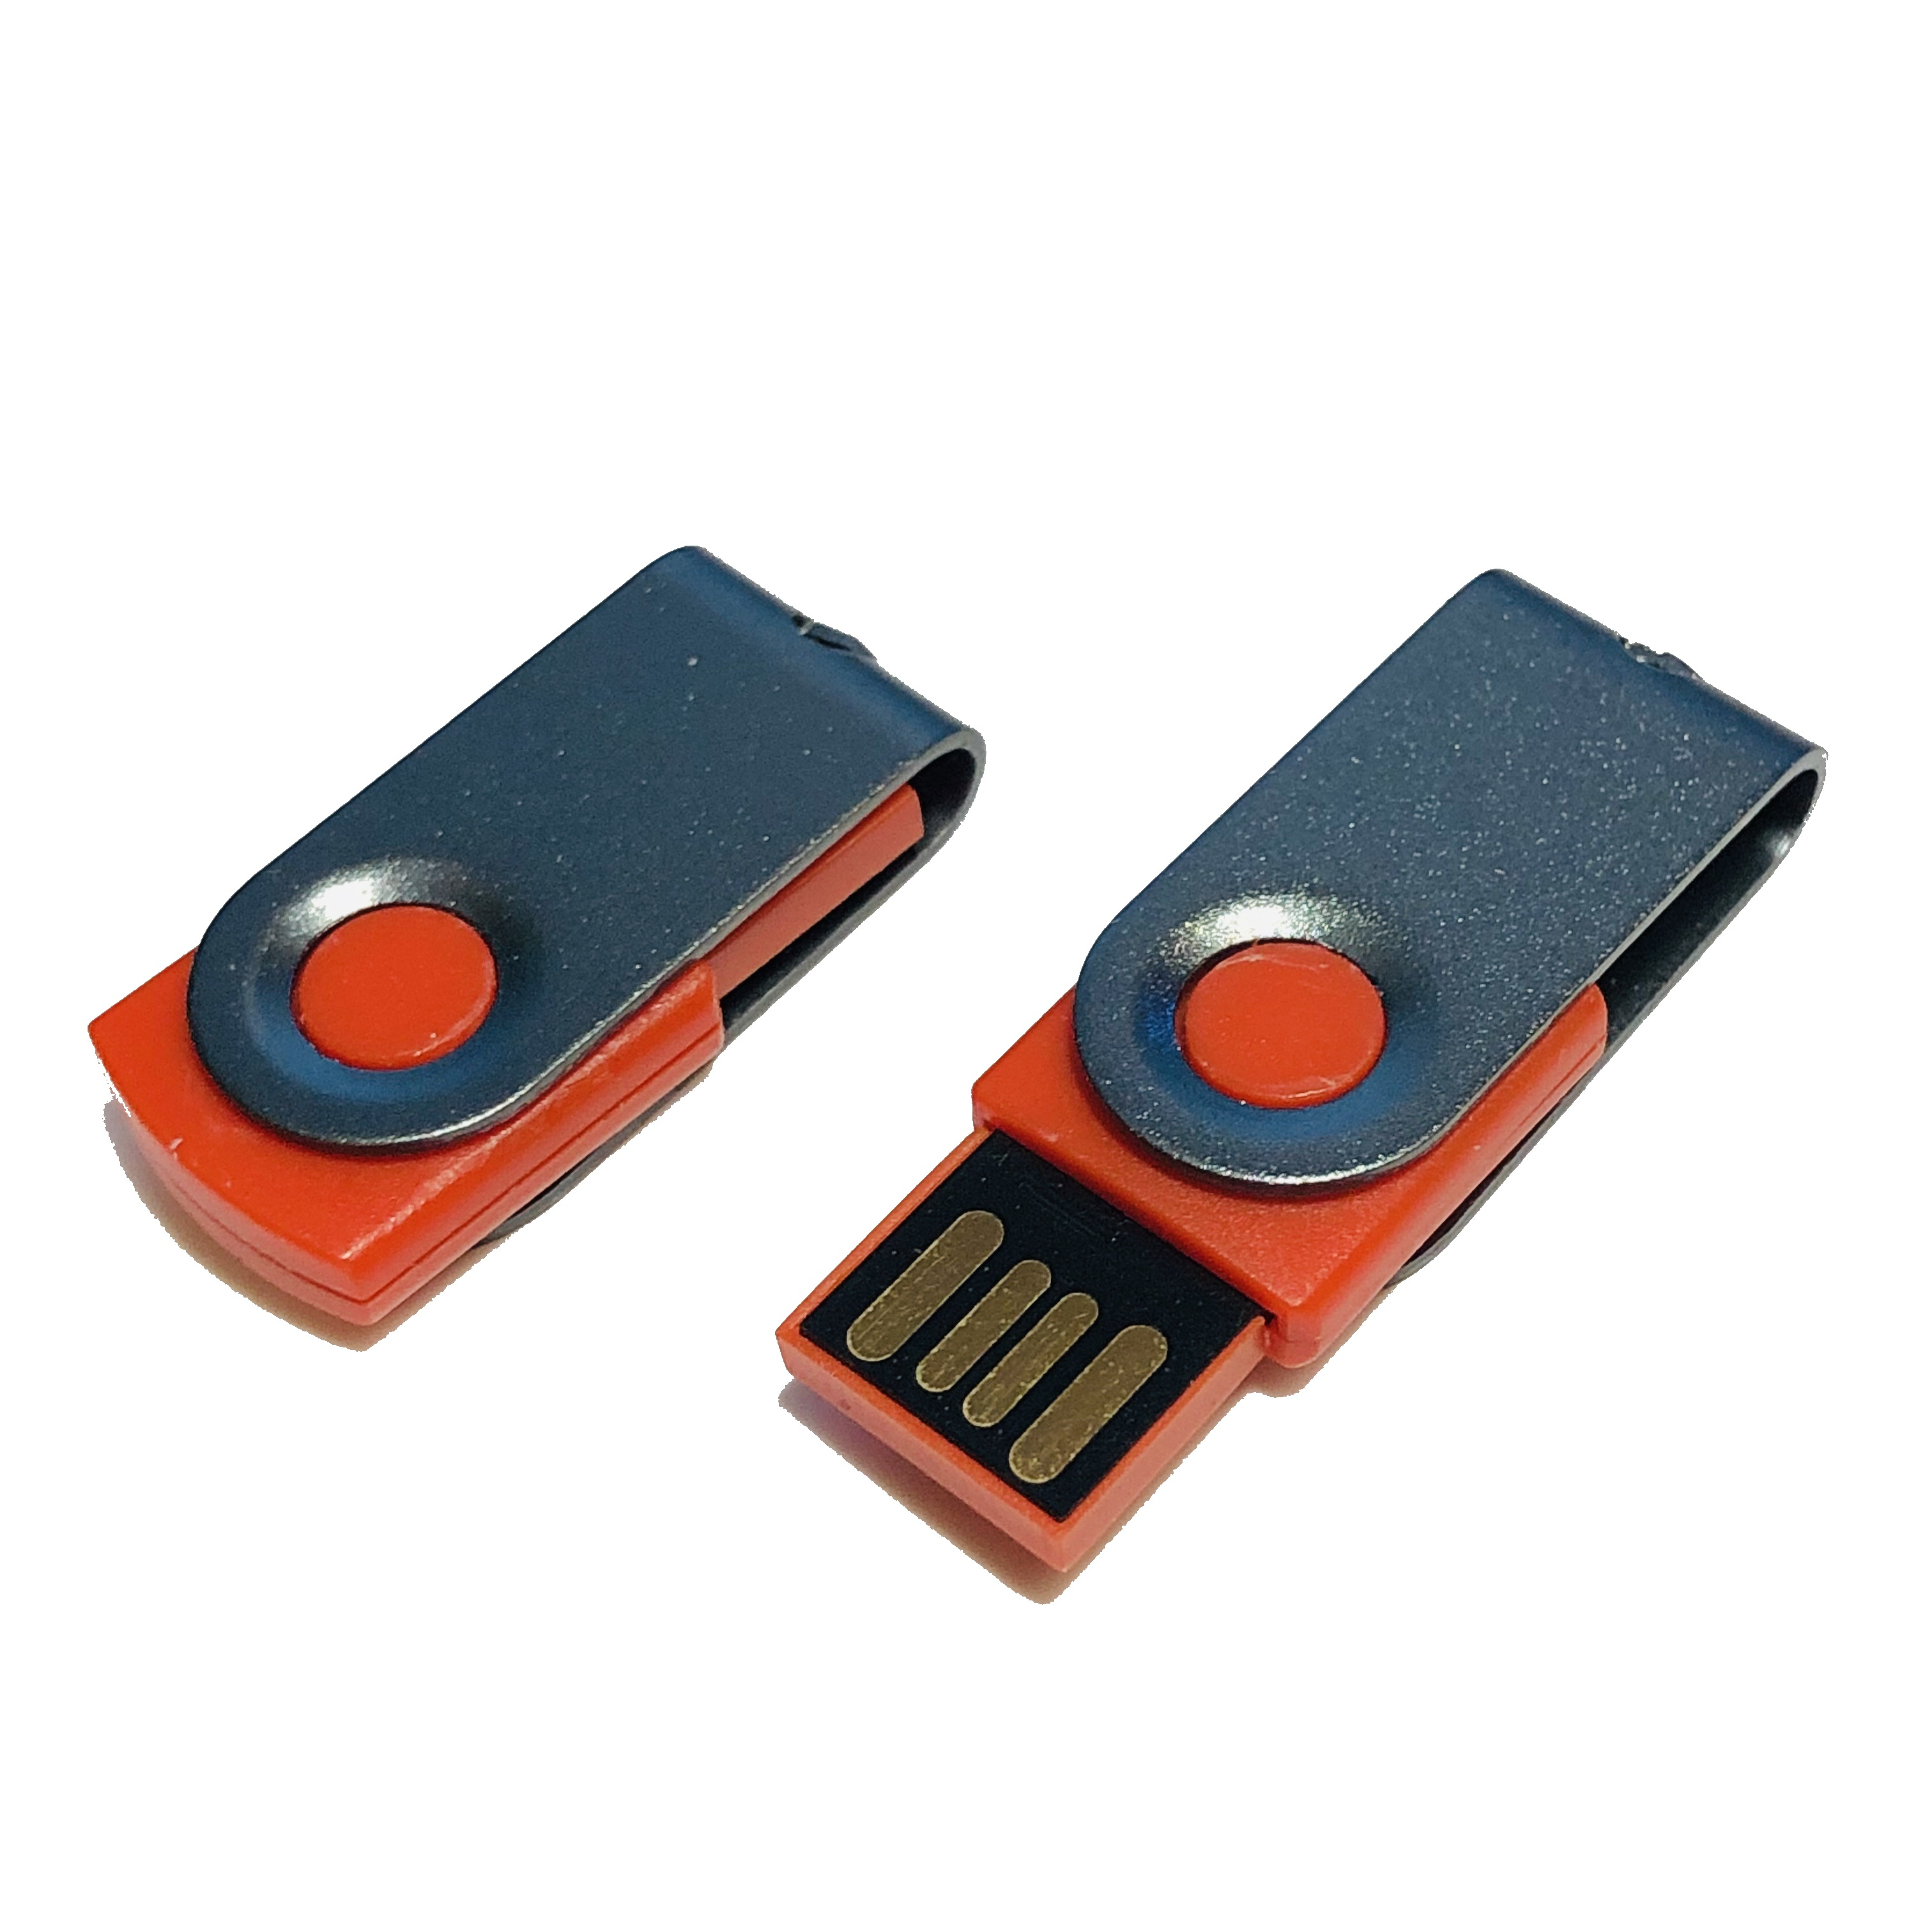 GERMANY (Rot-Graumetall, USB USB-Stick 1 ® GB) MINI-SWIVEL